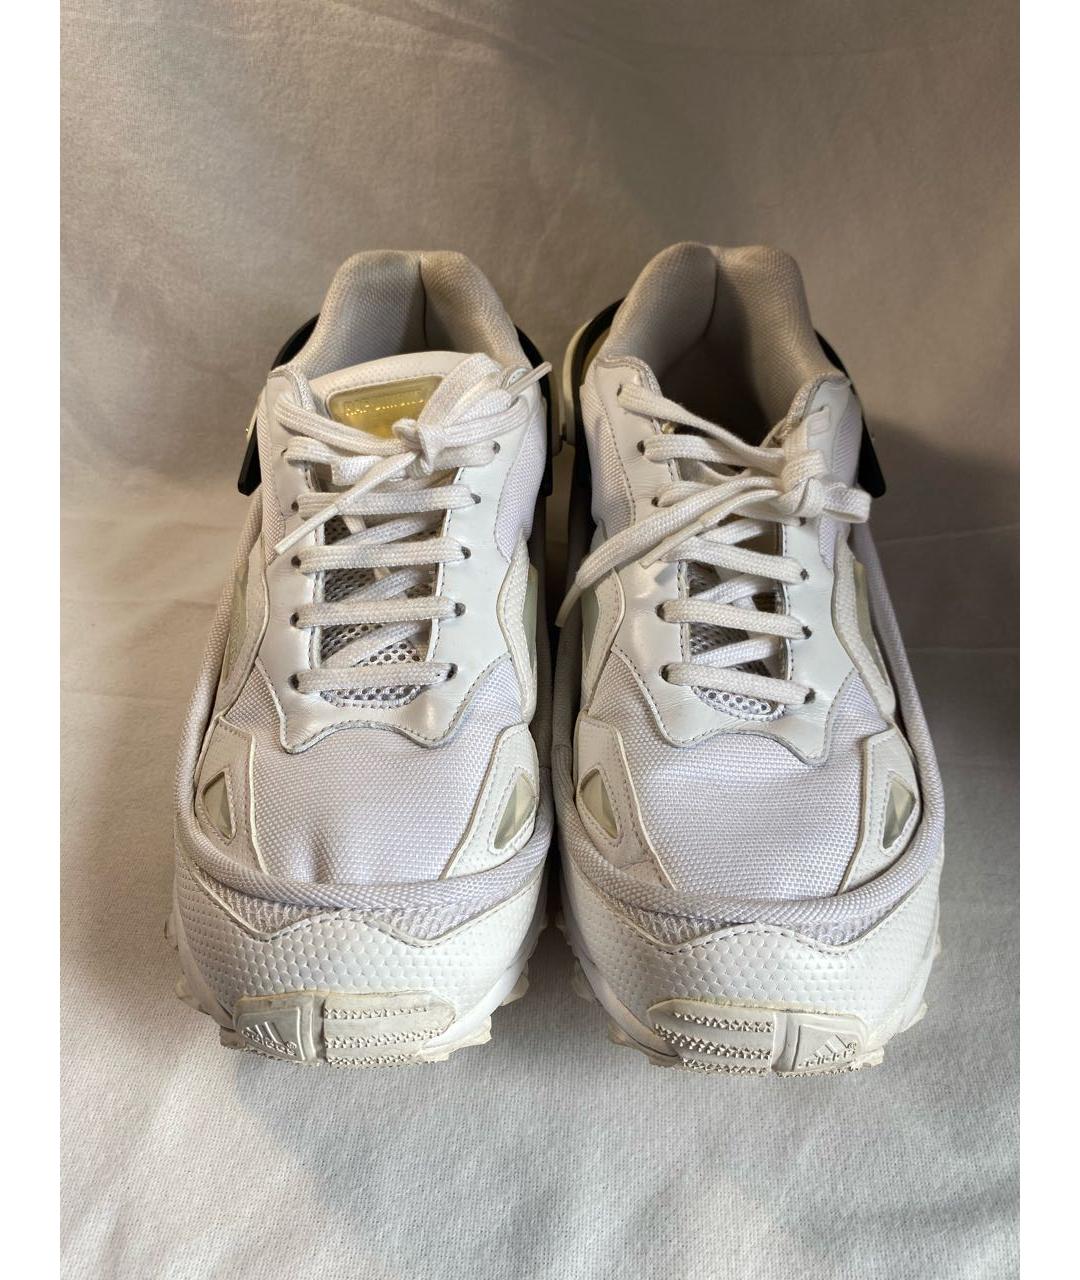 ADIDAS X RAF SIMONS Белые текстильные низкие кроссовки / кеды, фото 2